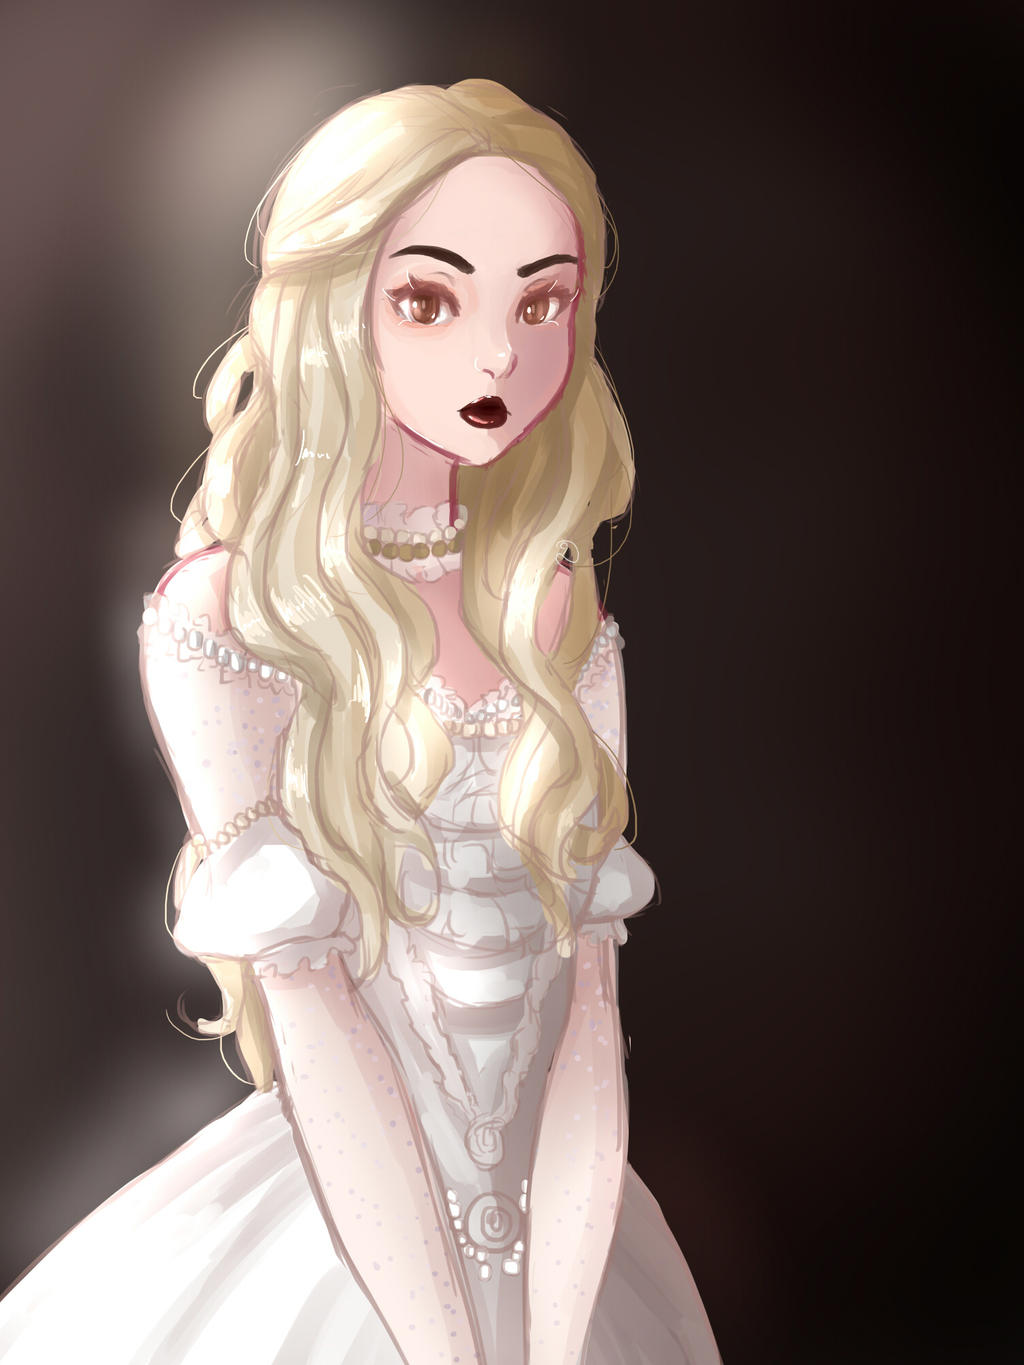 Alice in Wonderland White Queen by Hichiyan on DeviantArt